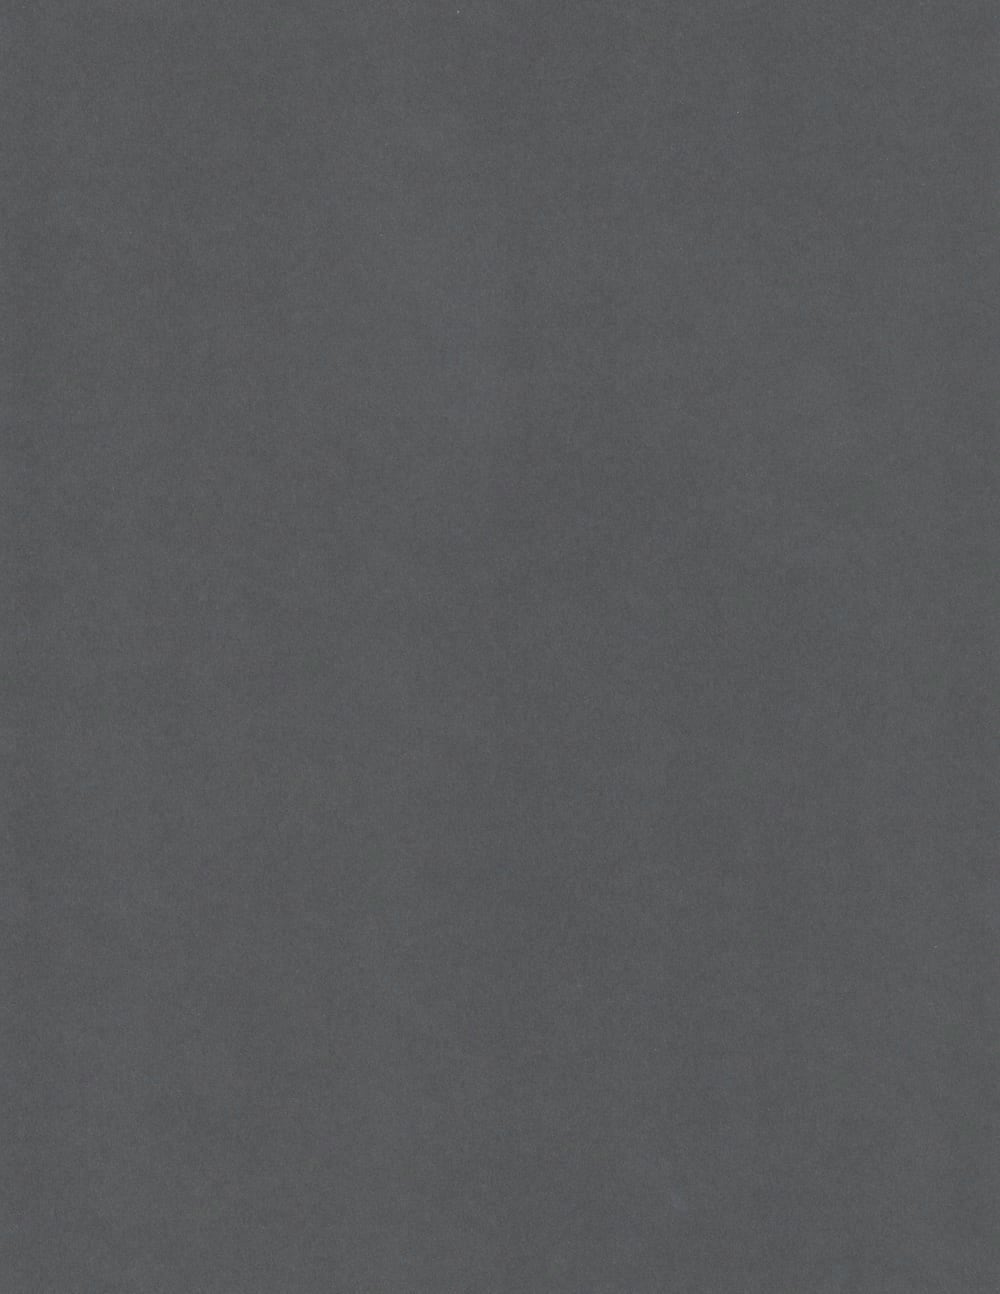 Antracite Sirio | Gray Colored Cardstock Paper | Solid-Core 80lb Cover